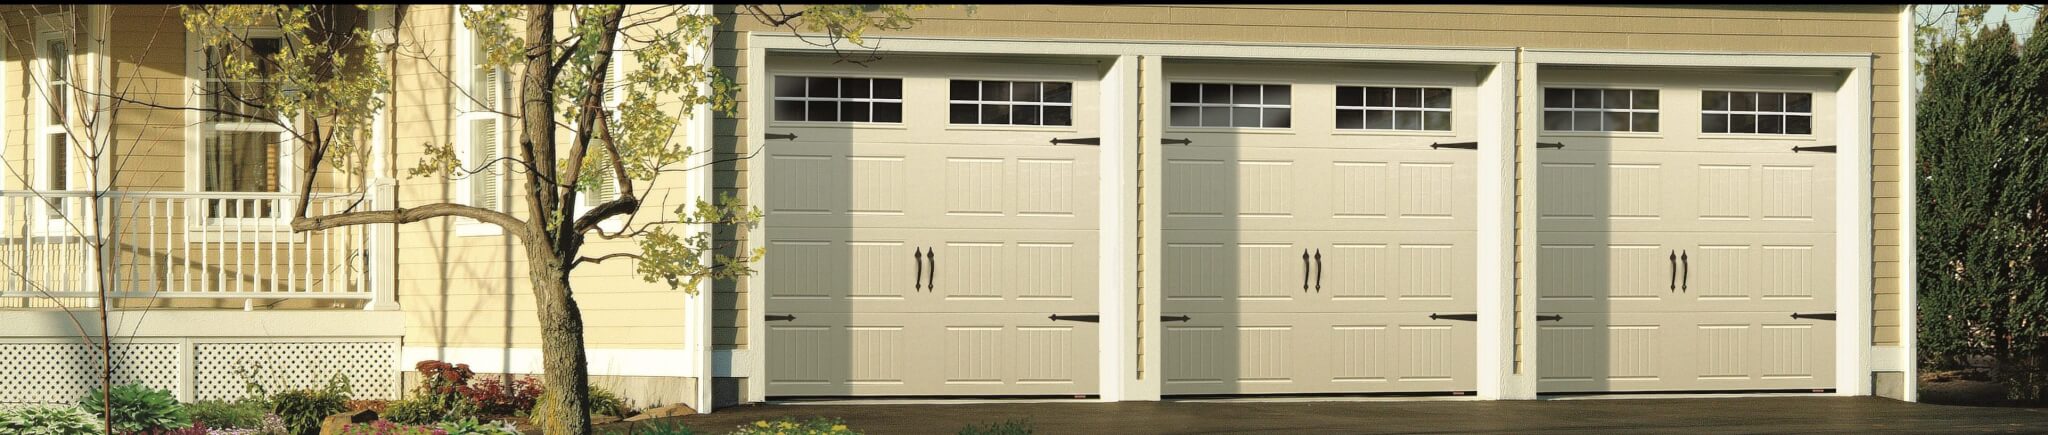 triple garage doors